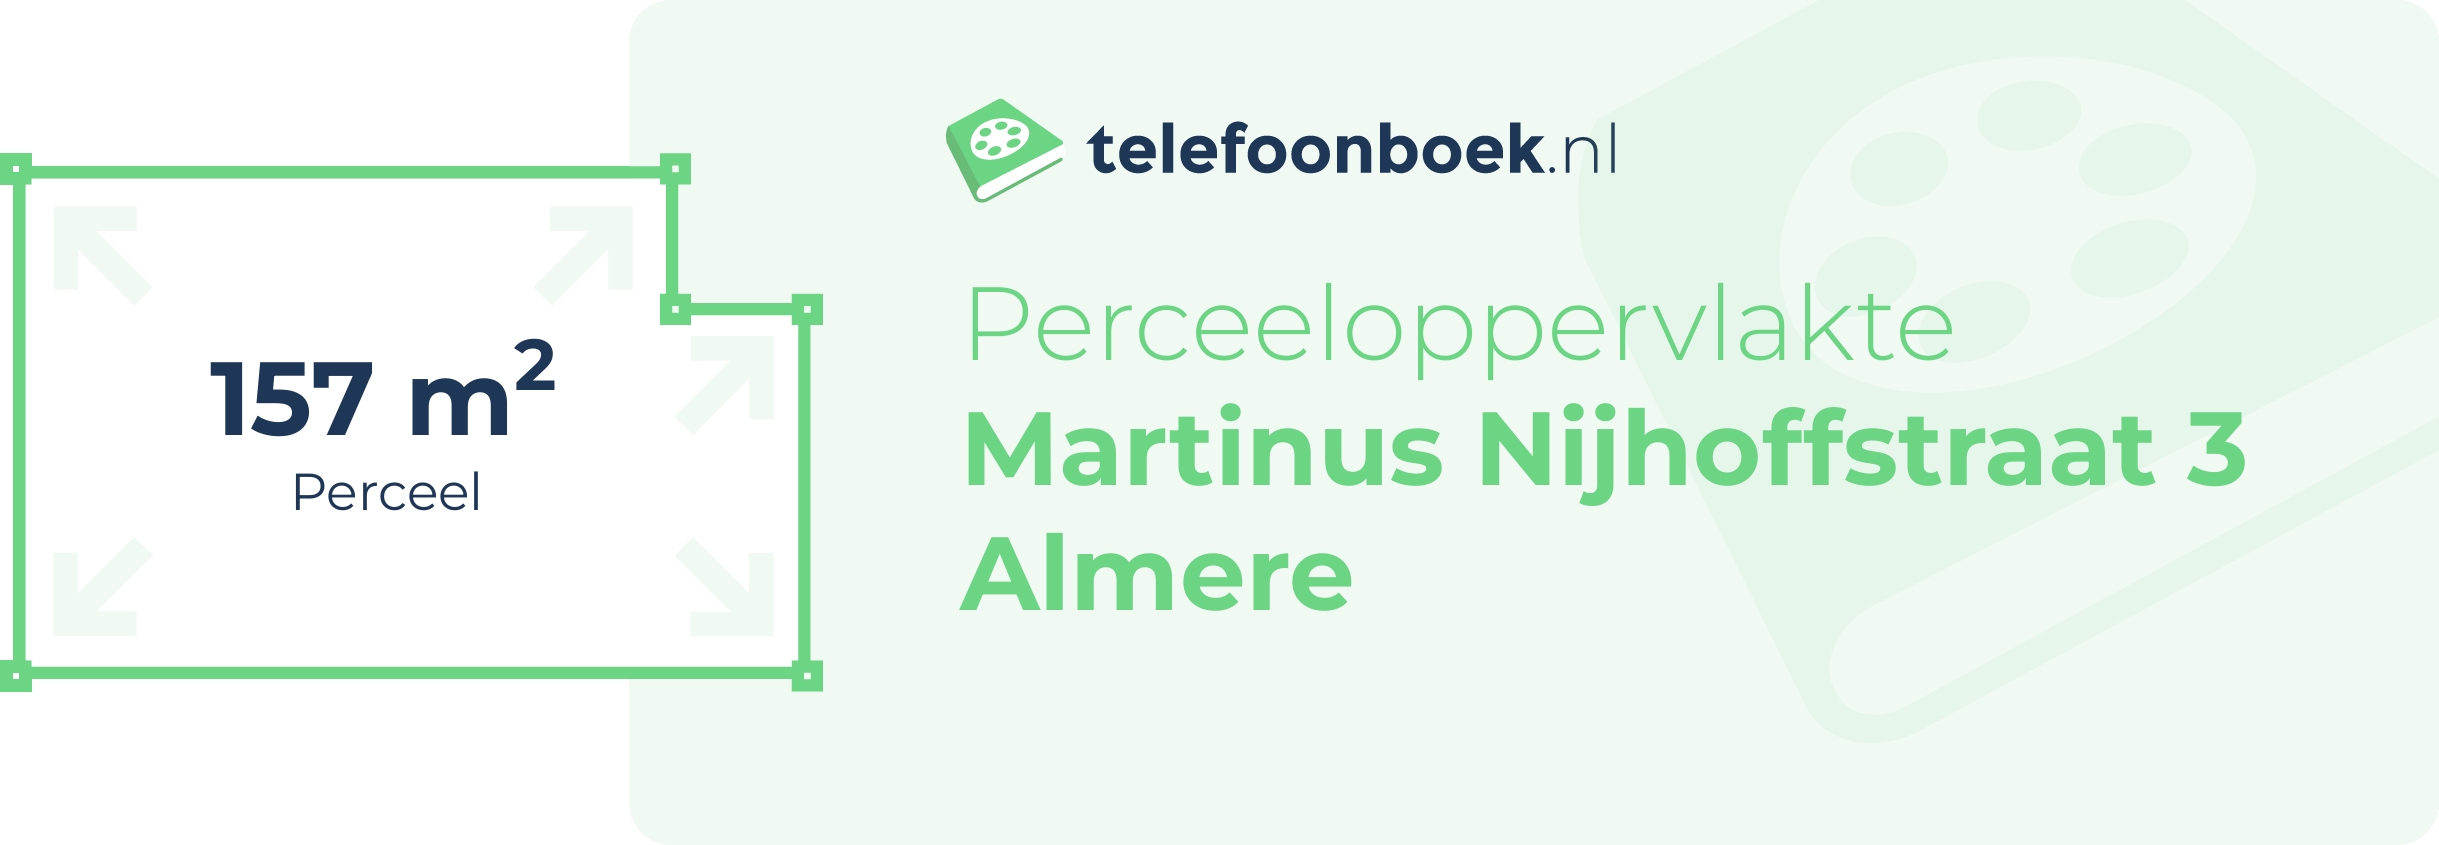 Perceeloppervlakte Martinus Nijhoffstraat 3 Almere